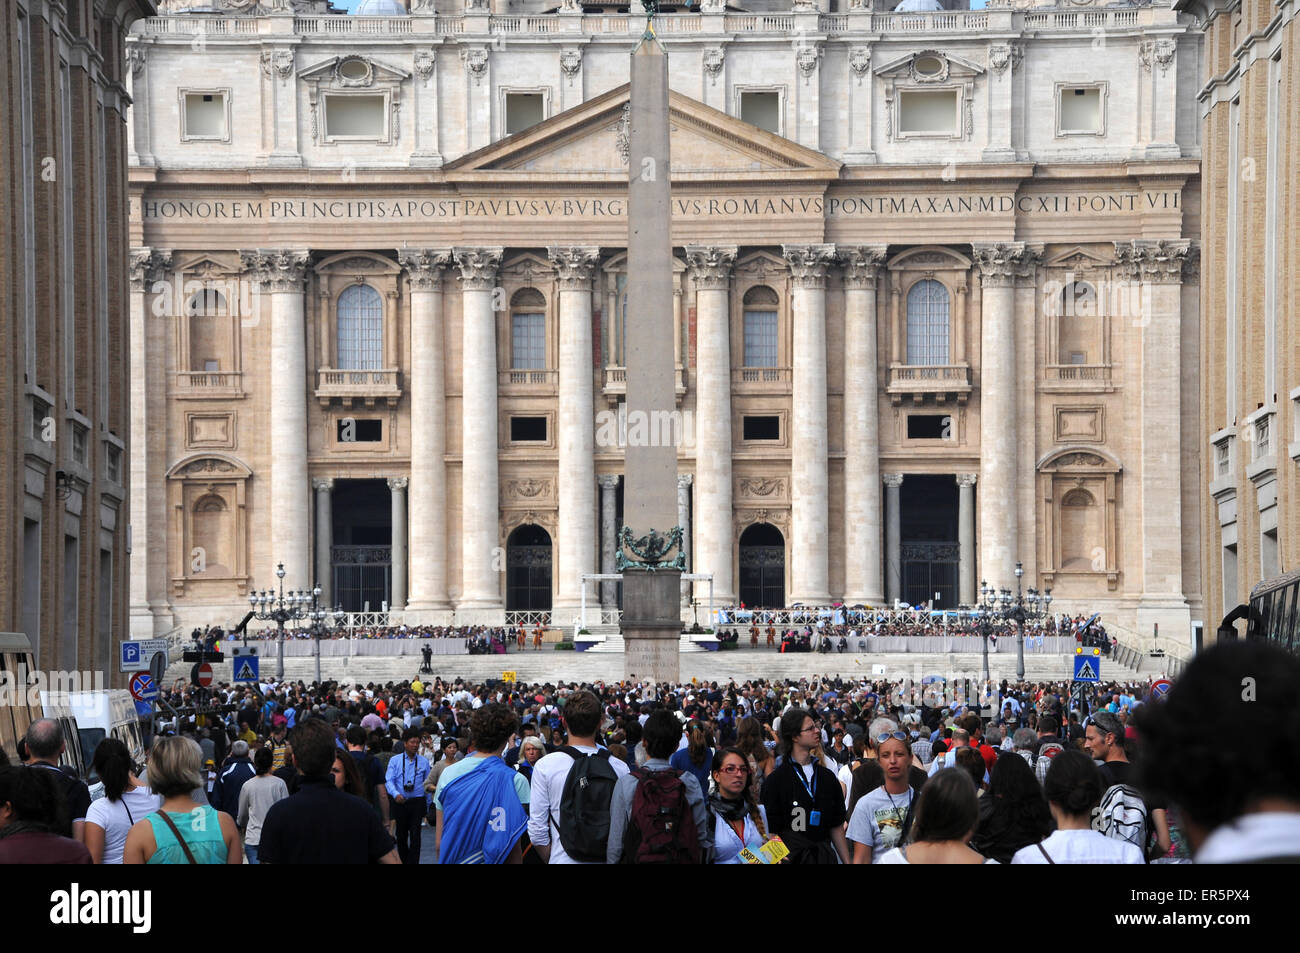 Le pape François lors d'une audience papale en face de la Basilique Saint Pierre, Rome, Italie Banque D'Images